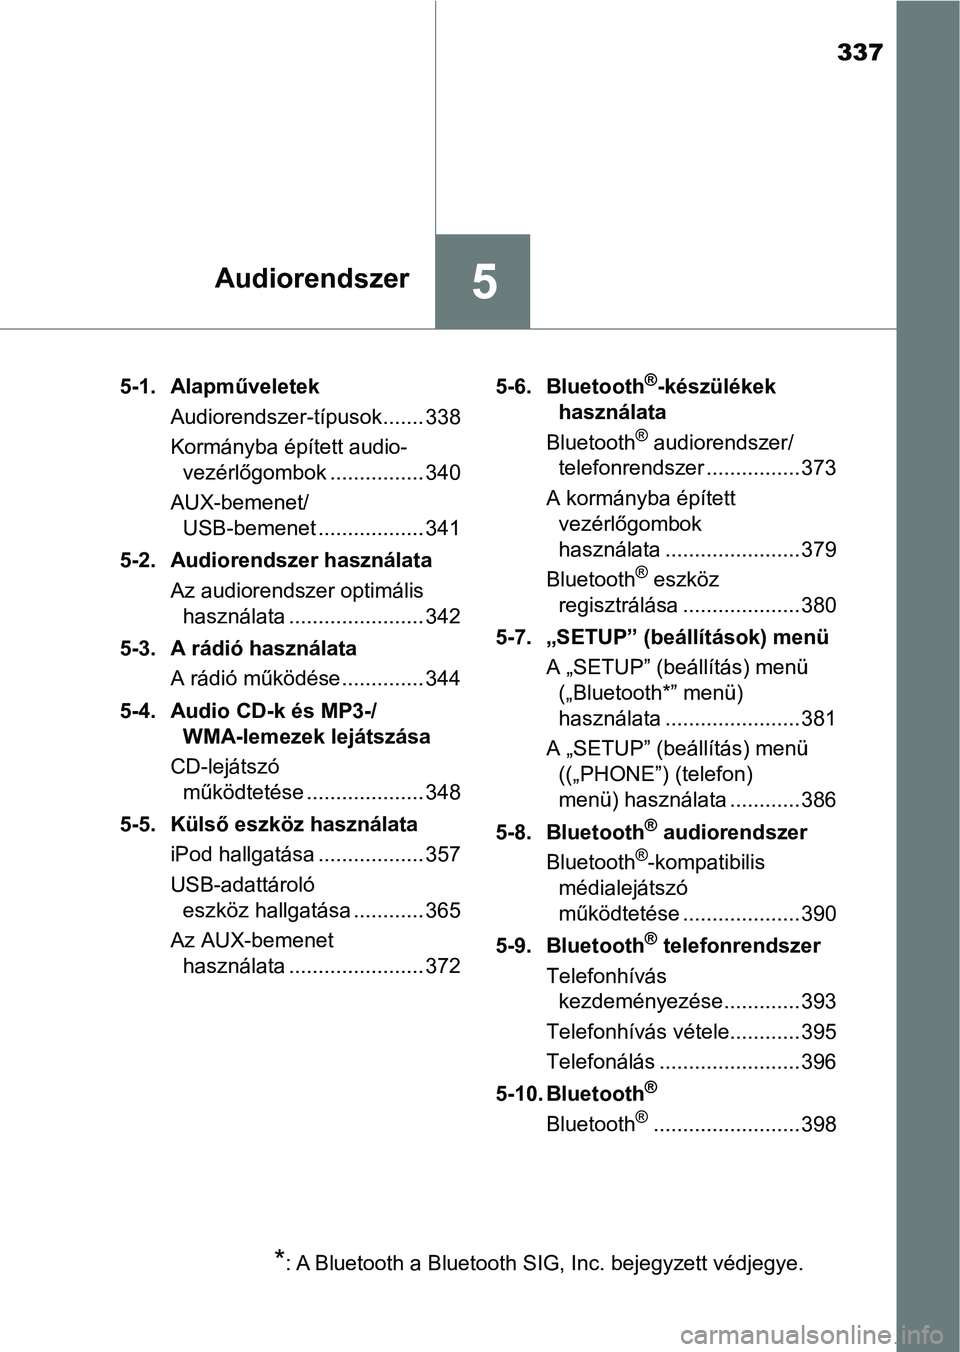 TOYOTA YARIS 2018  Kezelési útmutató (in Hungarian) 337
5Audiorendszer
5-1. AlapműveletekAudiorendszer-típusok ....... 338
Kormányba épített audio-vezérlőgombok ................ 340
AUX-bemenet/ USB-bemenet .................. 341
5-2. Audiorends